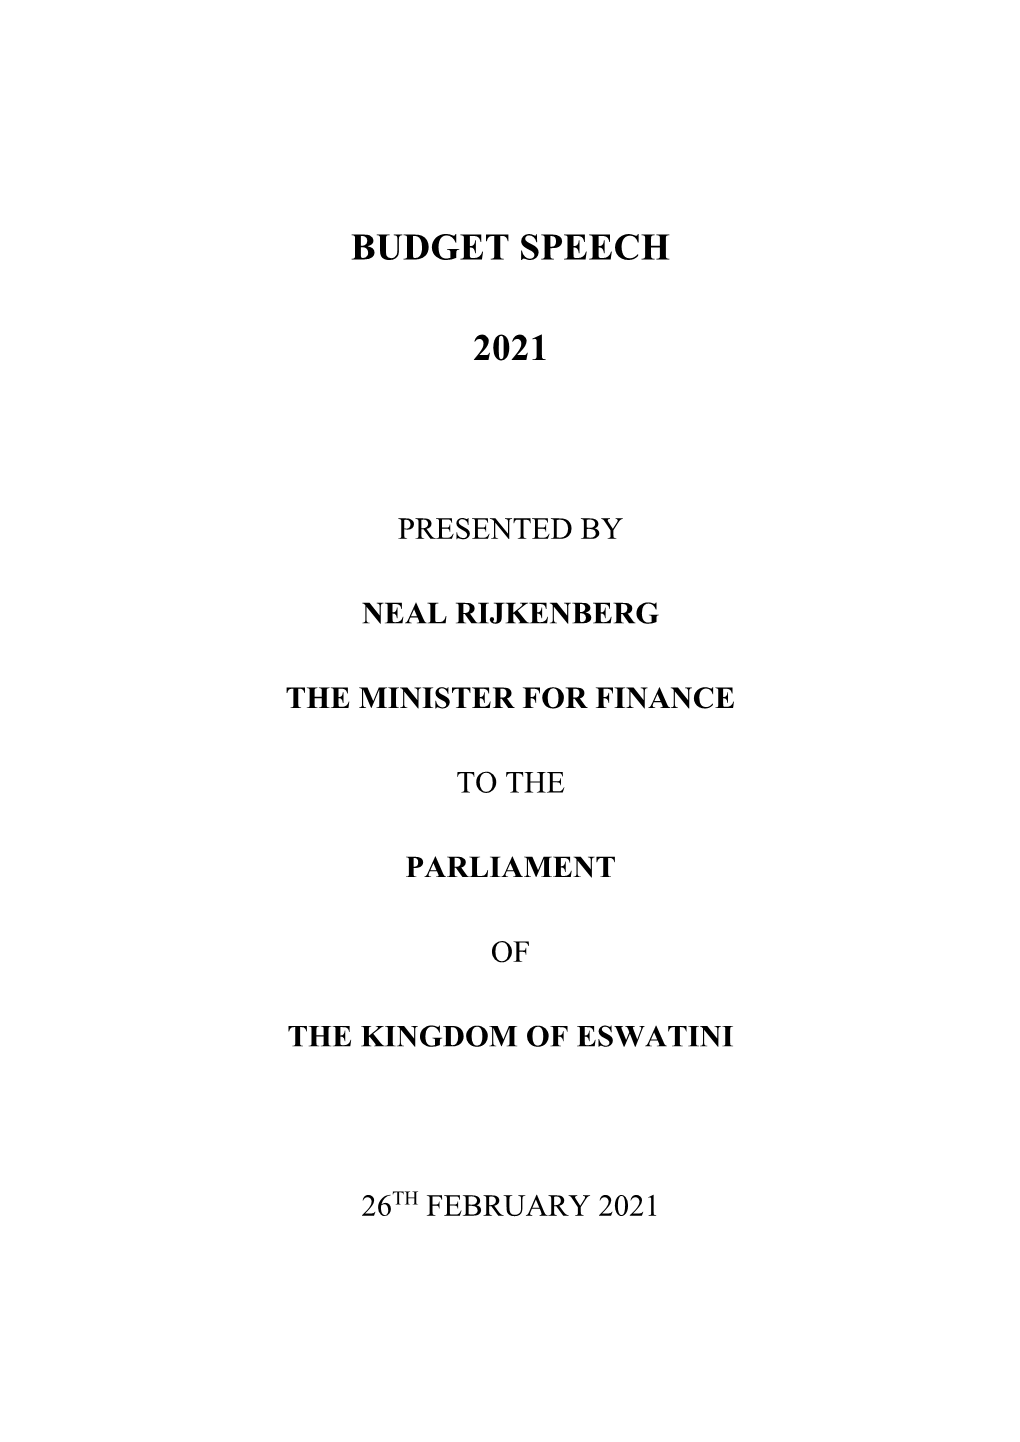 Budget Speech 2021